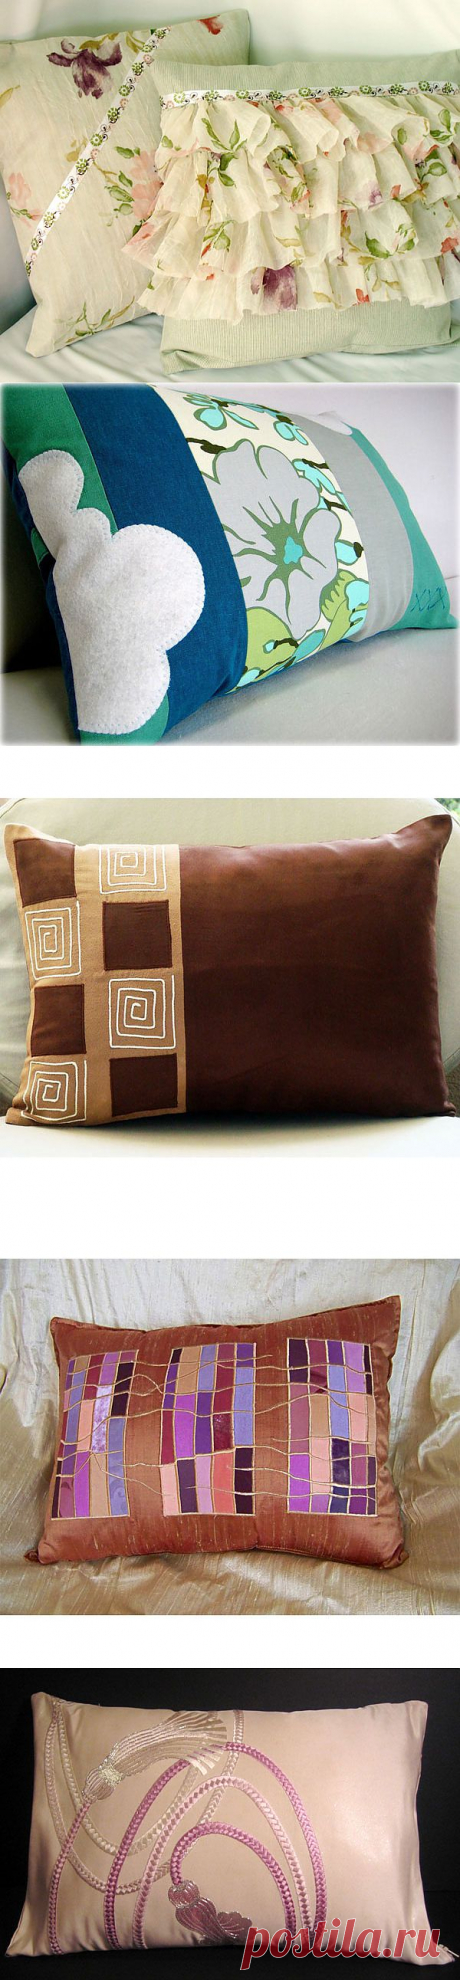 Домашний текстиль: красивые подушки своими руками